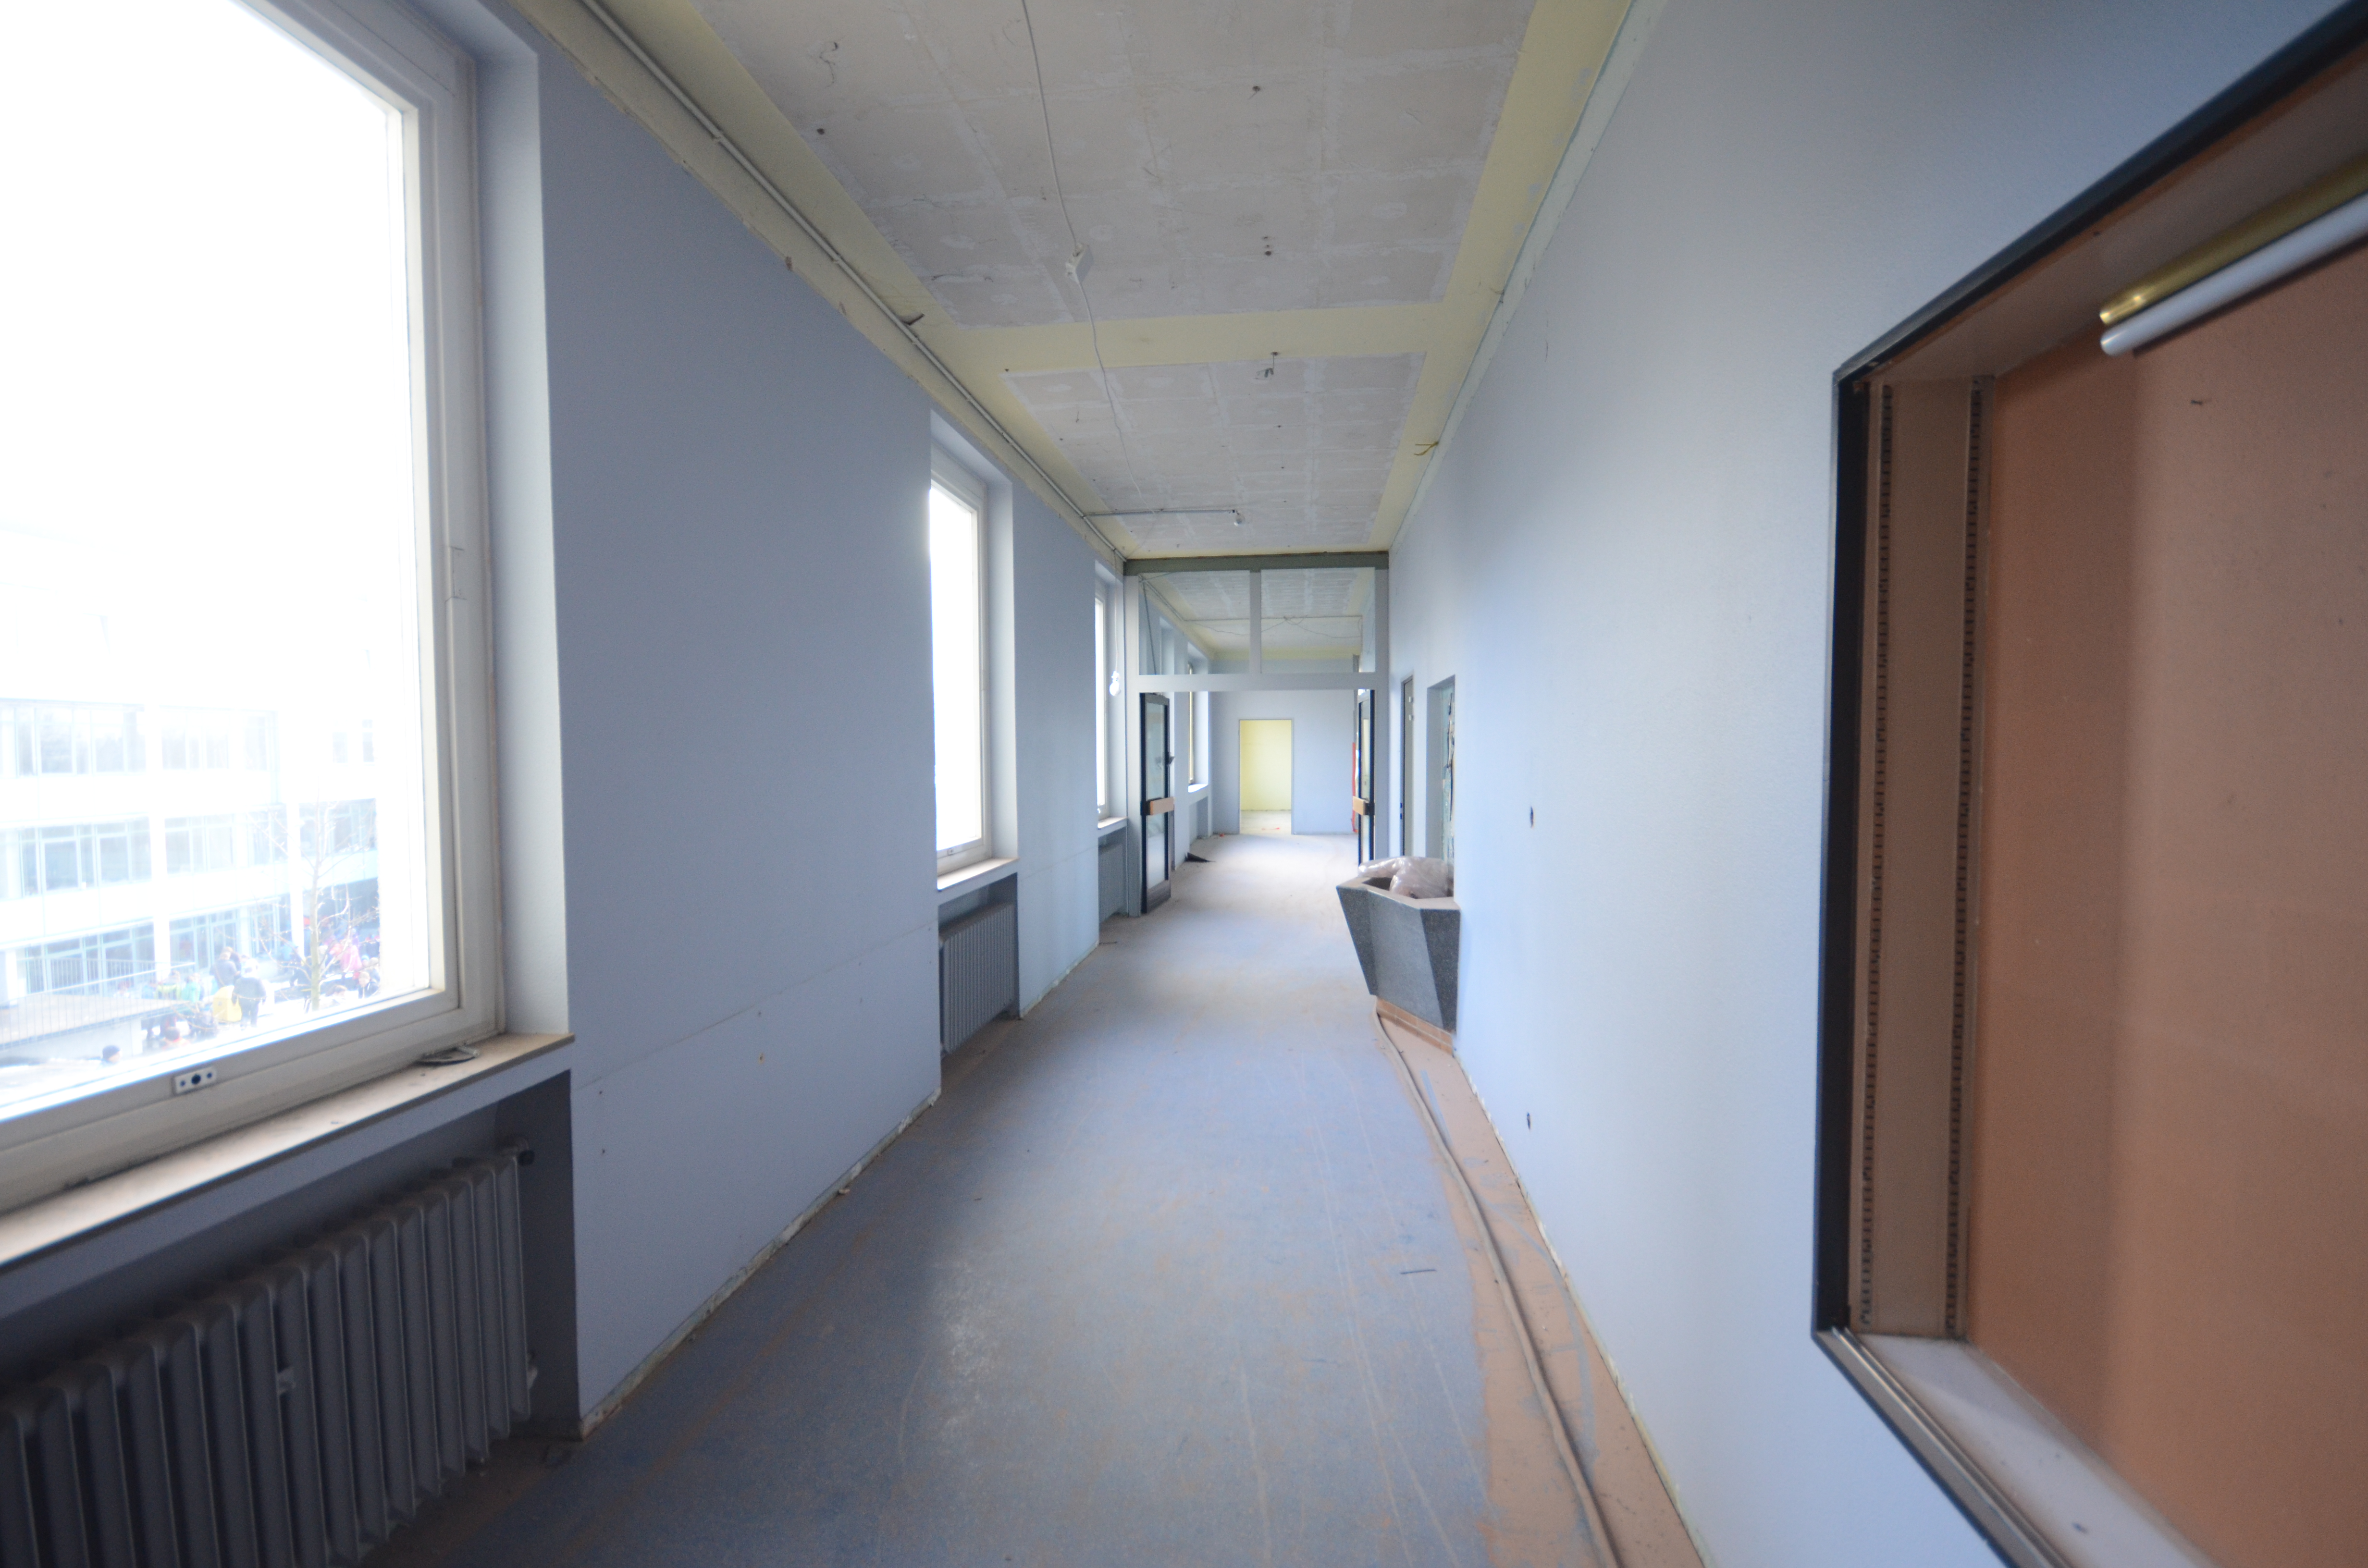 2015-Schulgebäude-neue-Verwaltung-53